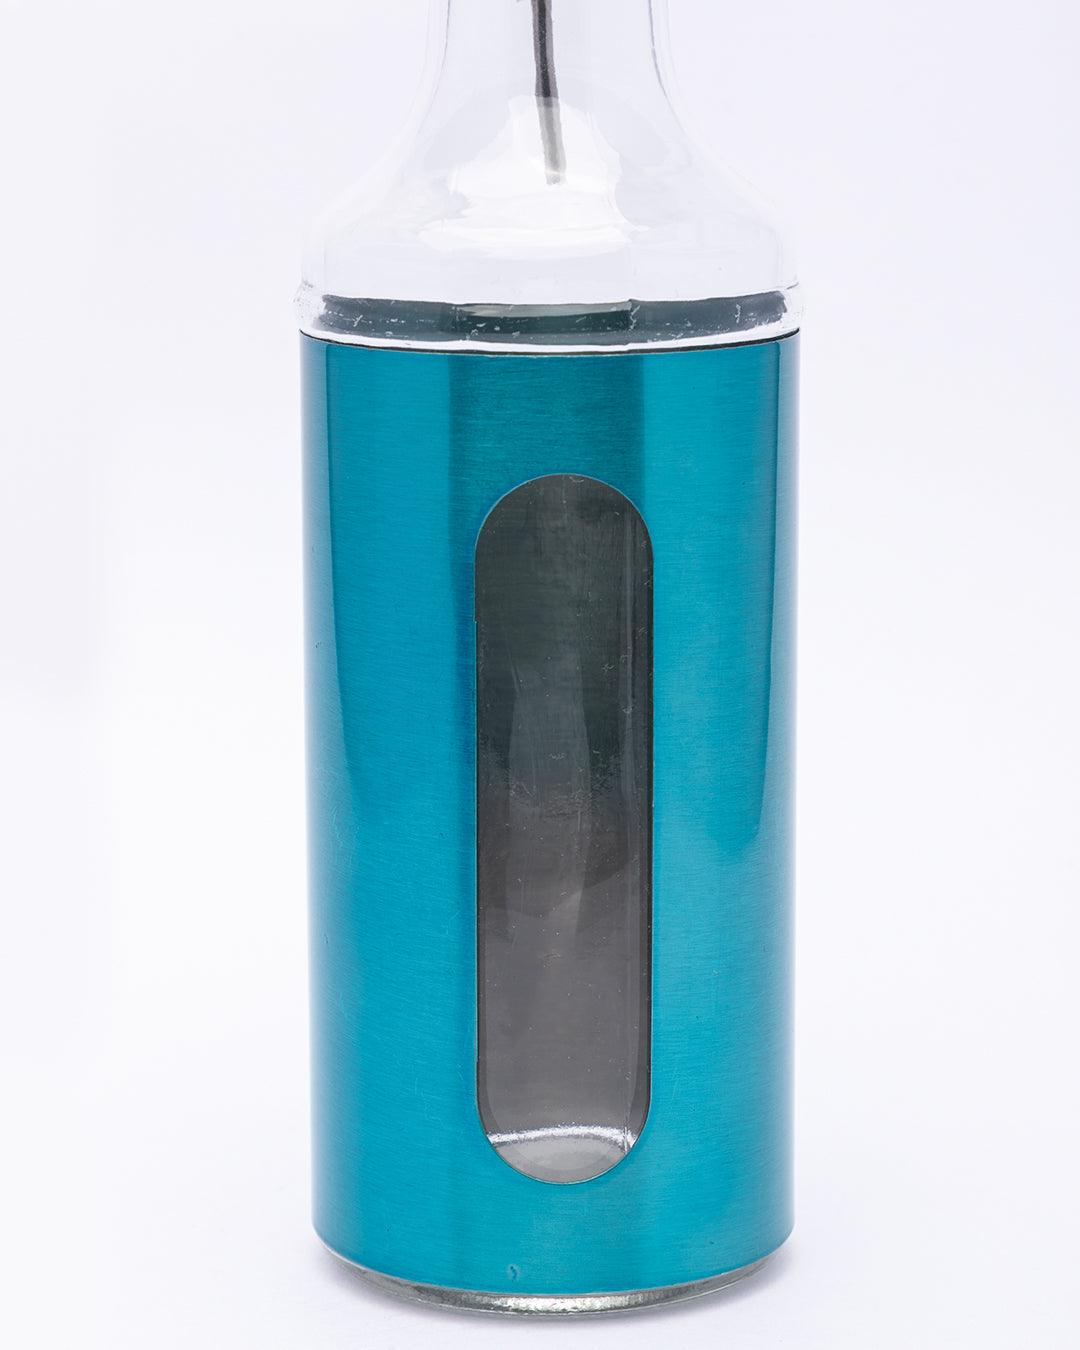 Oil Dispenser, Blue, Glass, Set Of 2, 350 mL - MARKET 99